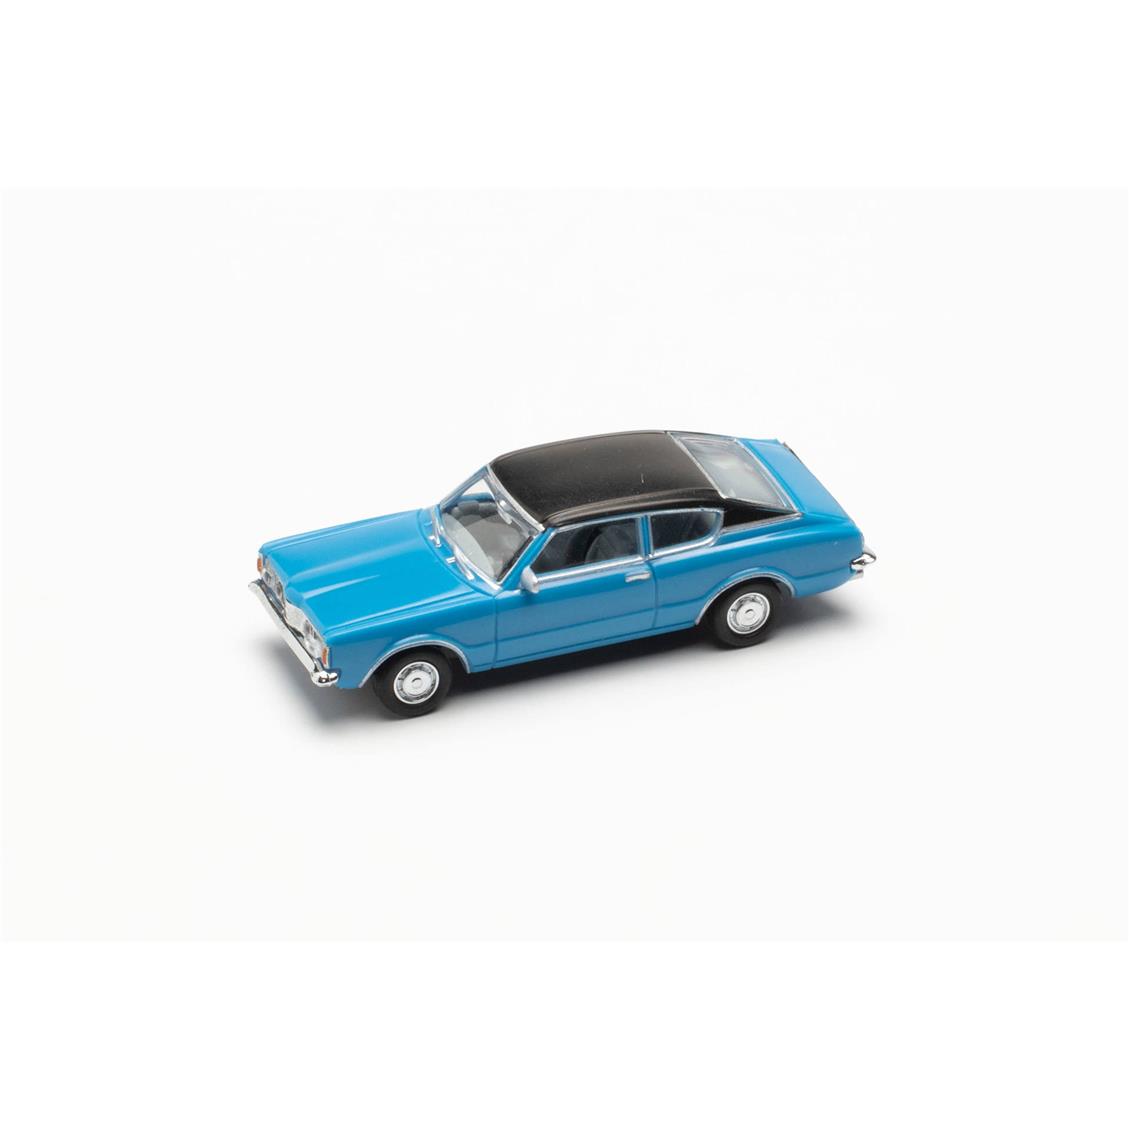 Herpa 023399-002 1/87 Ölçek Ford Taunus Coupe, Sky Blue, Sergilemeye Hazır  Model Araç